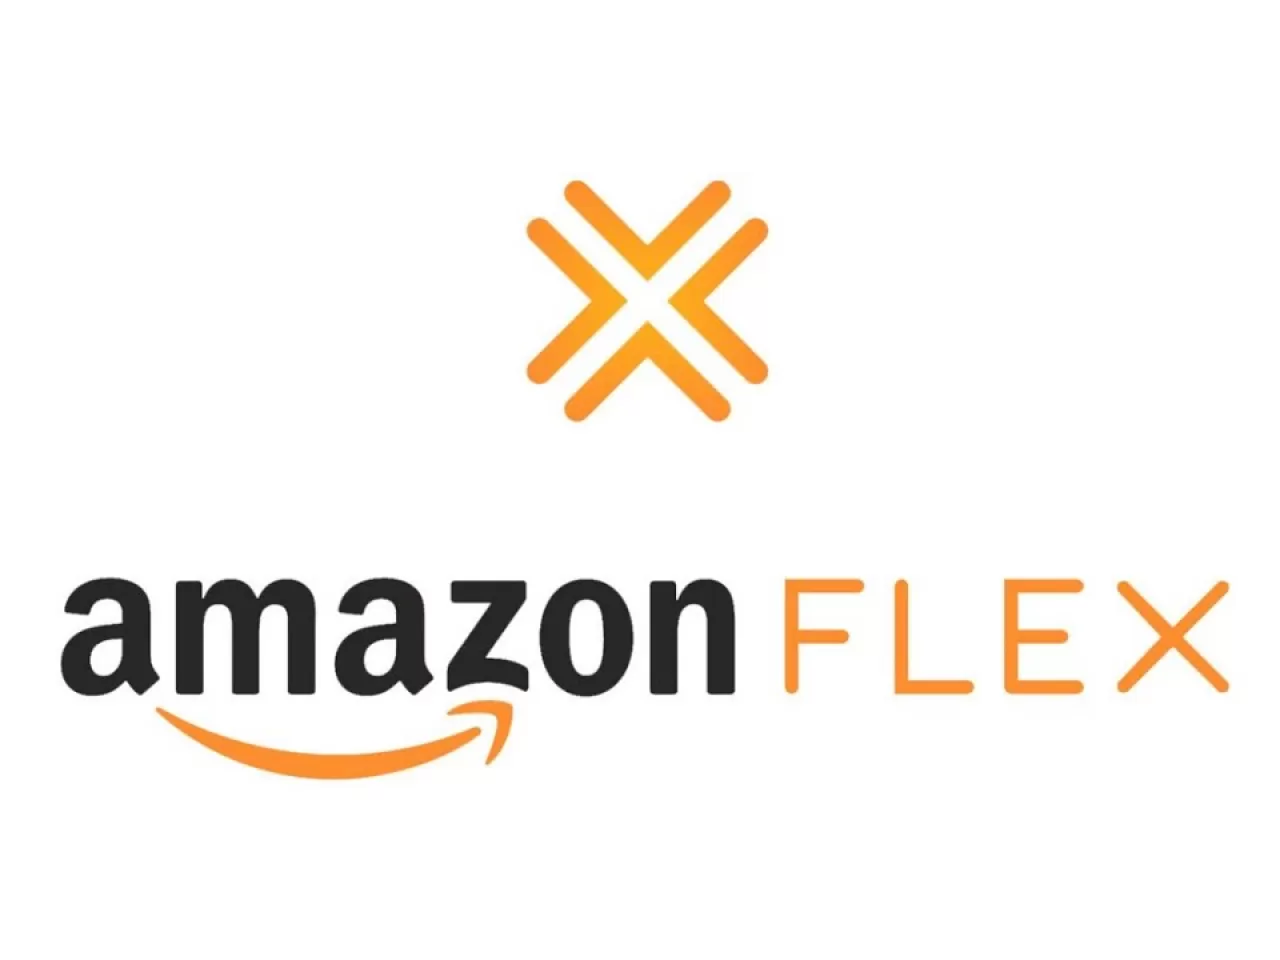 Amazon Flex Nedir? Amazon Flex Türkiye’de Var Mı?